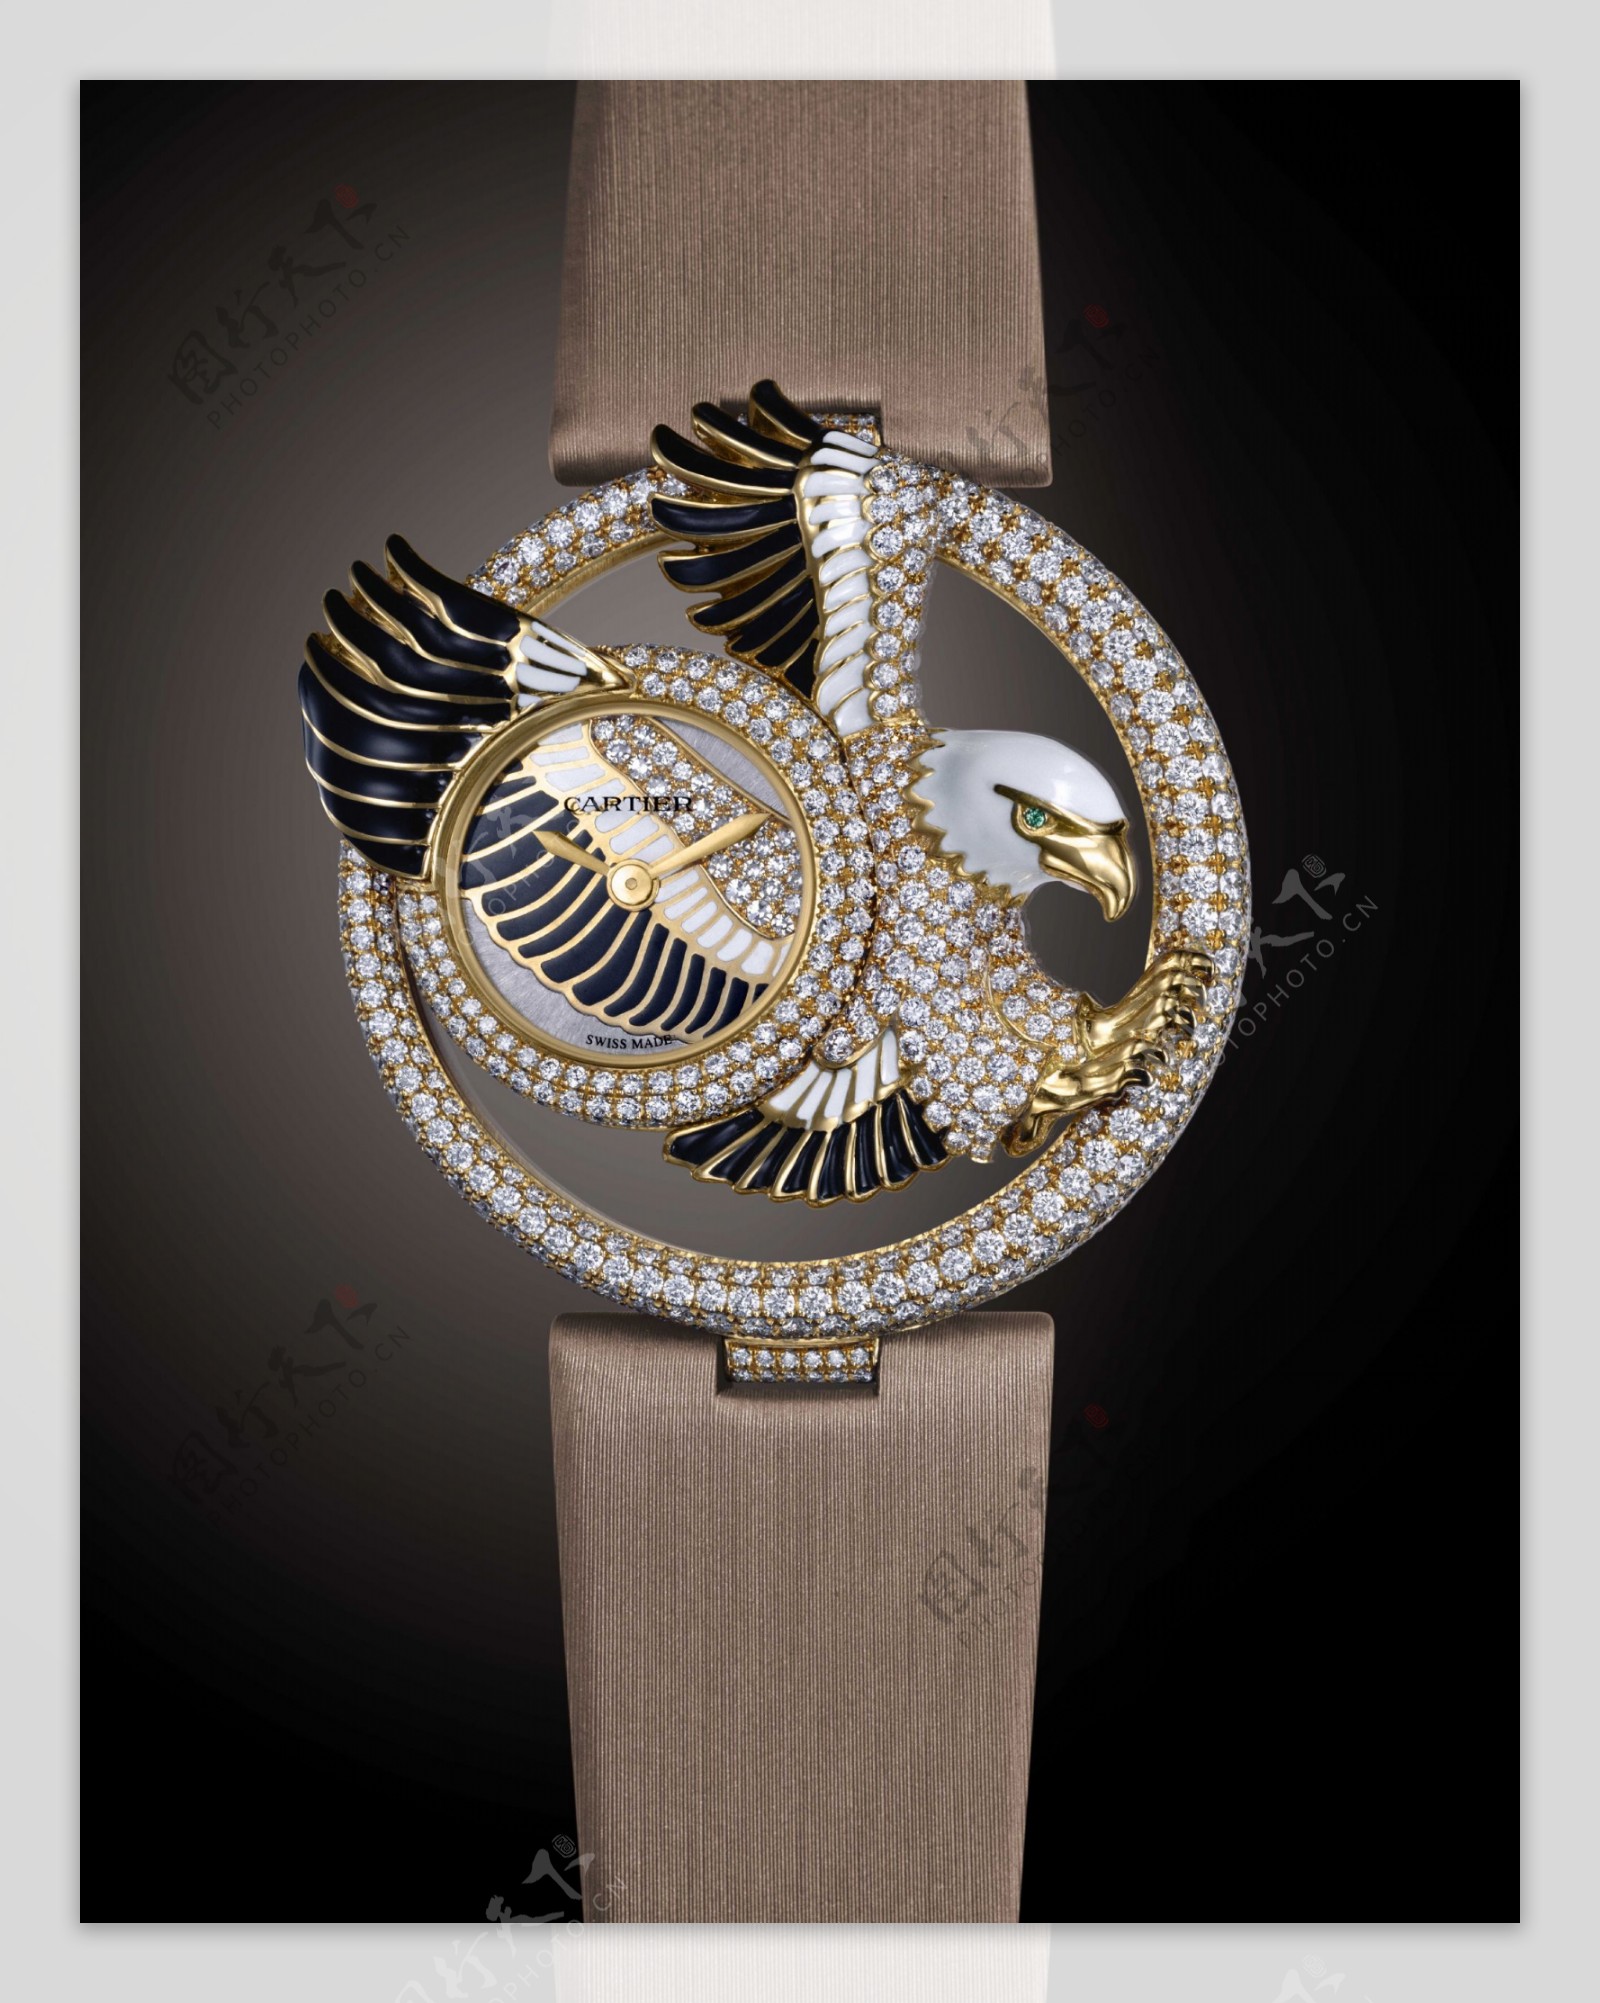 卡地亚2009新款钻石腕表精美大图图片